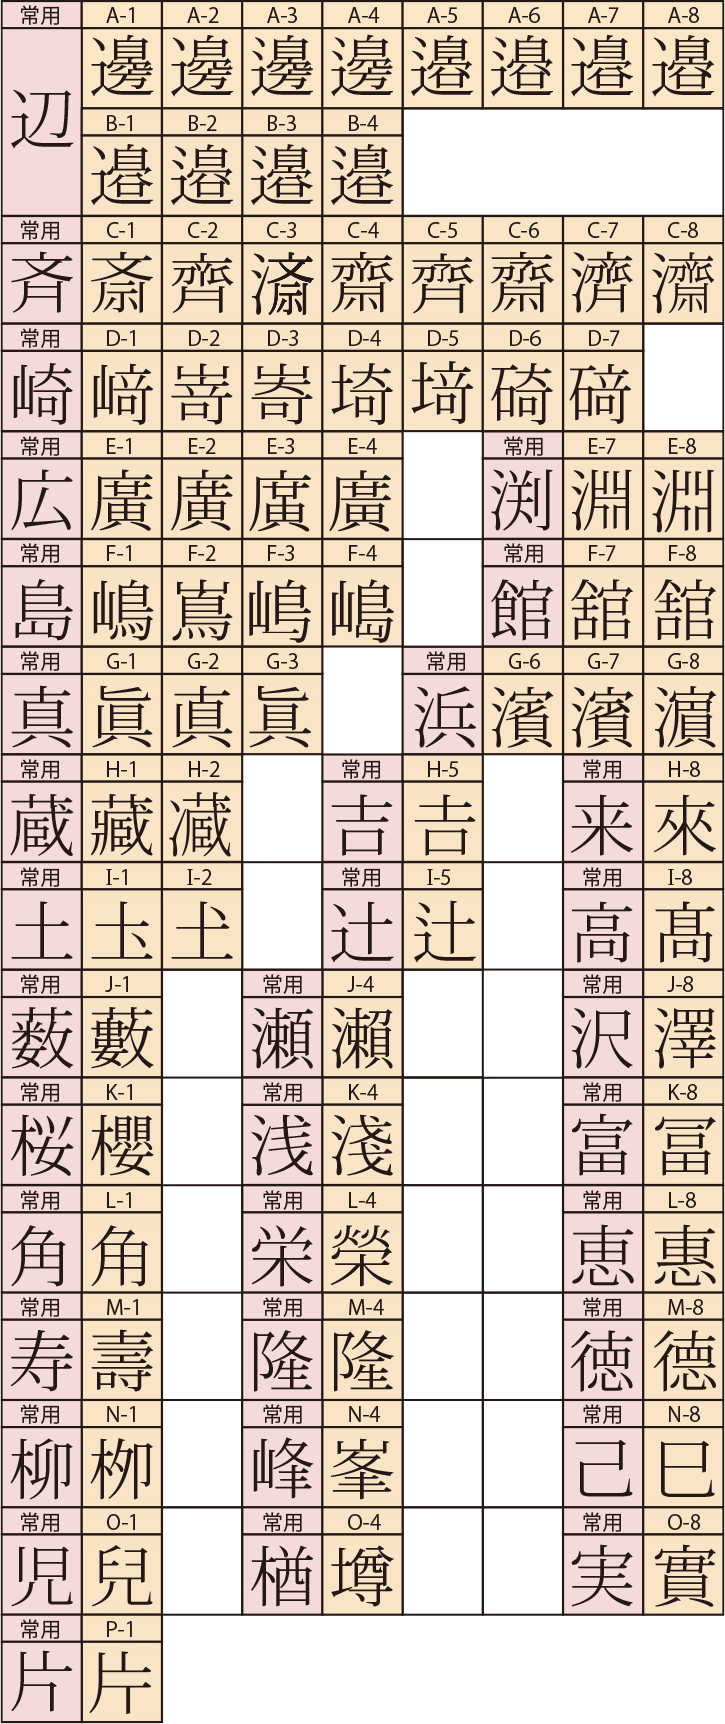 数字 旧 漢字